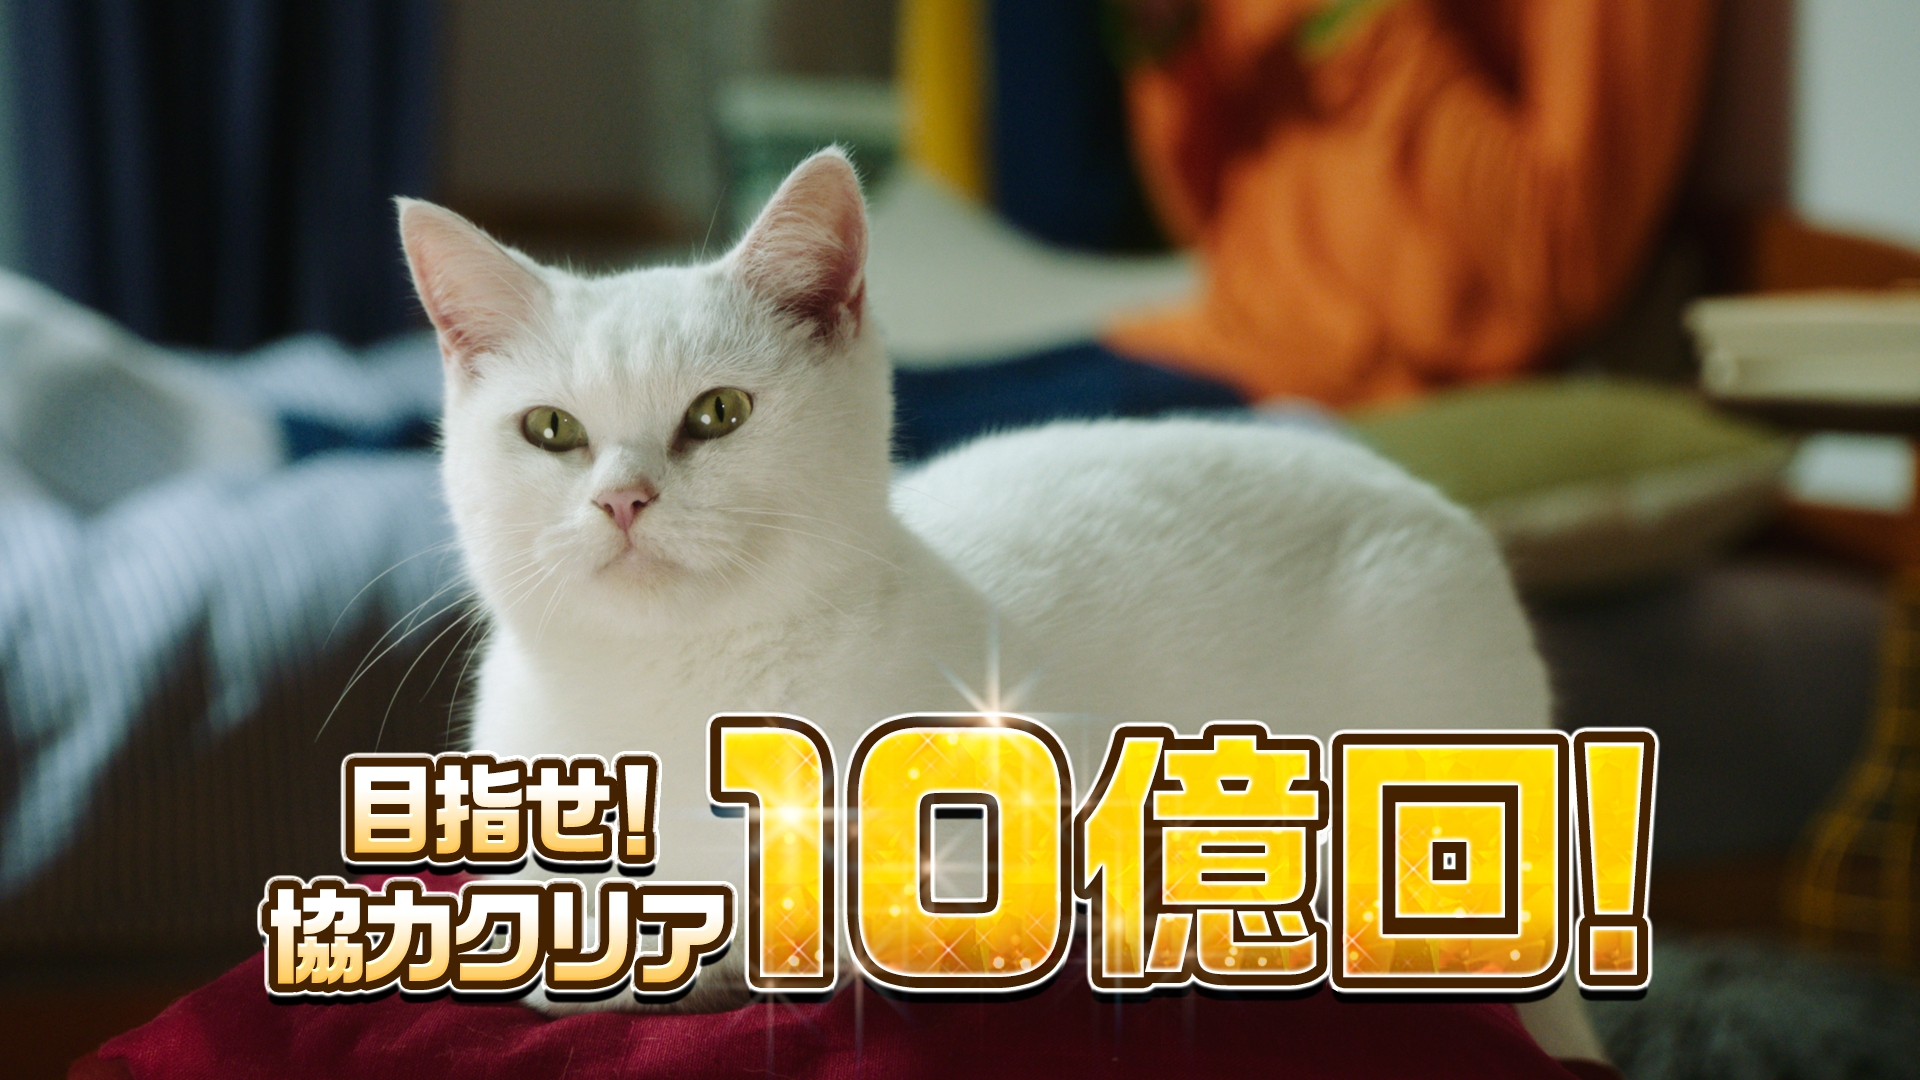 桜井日奈子さんが川柳を詠む 白猫プロジェクト の新テレビcmが放映決定 Appliv Games